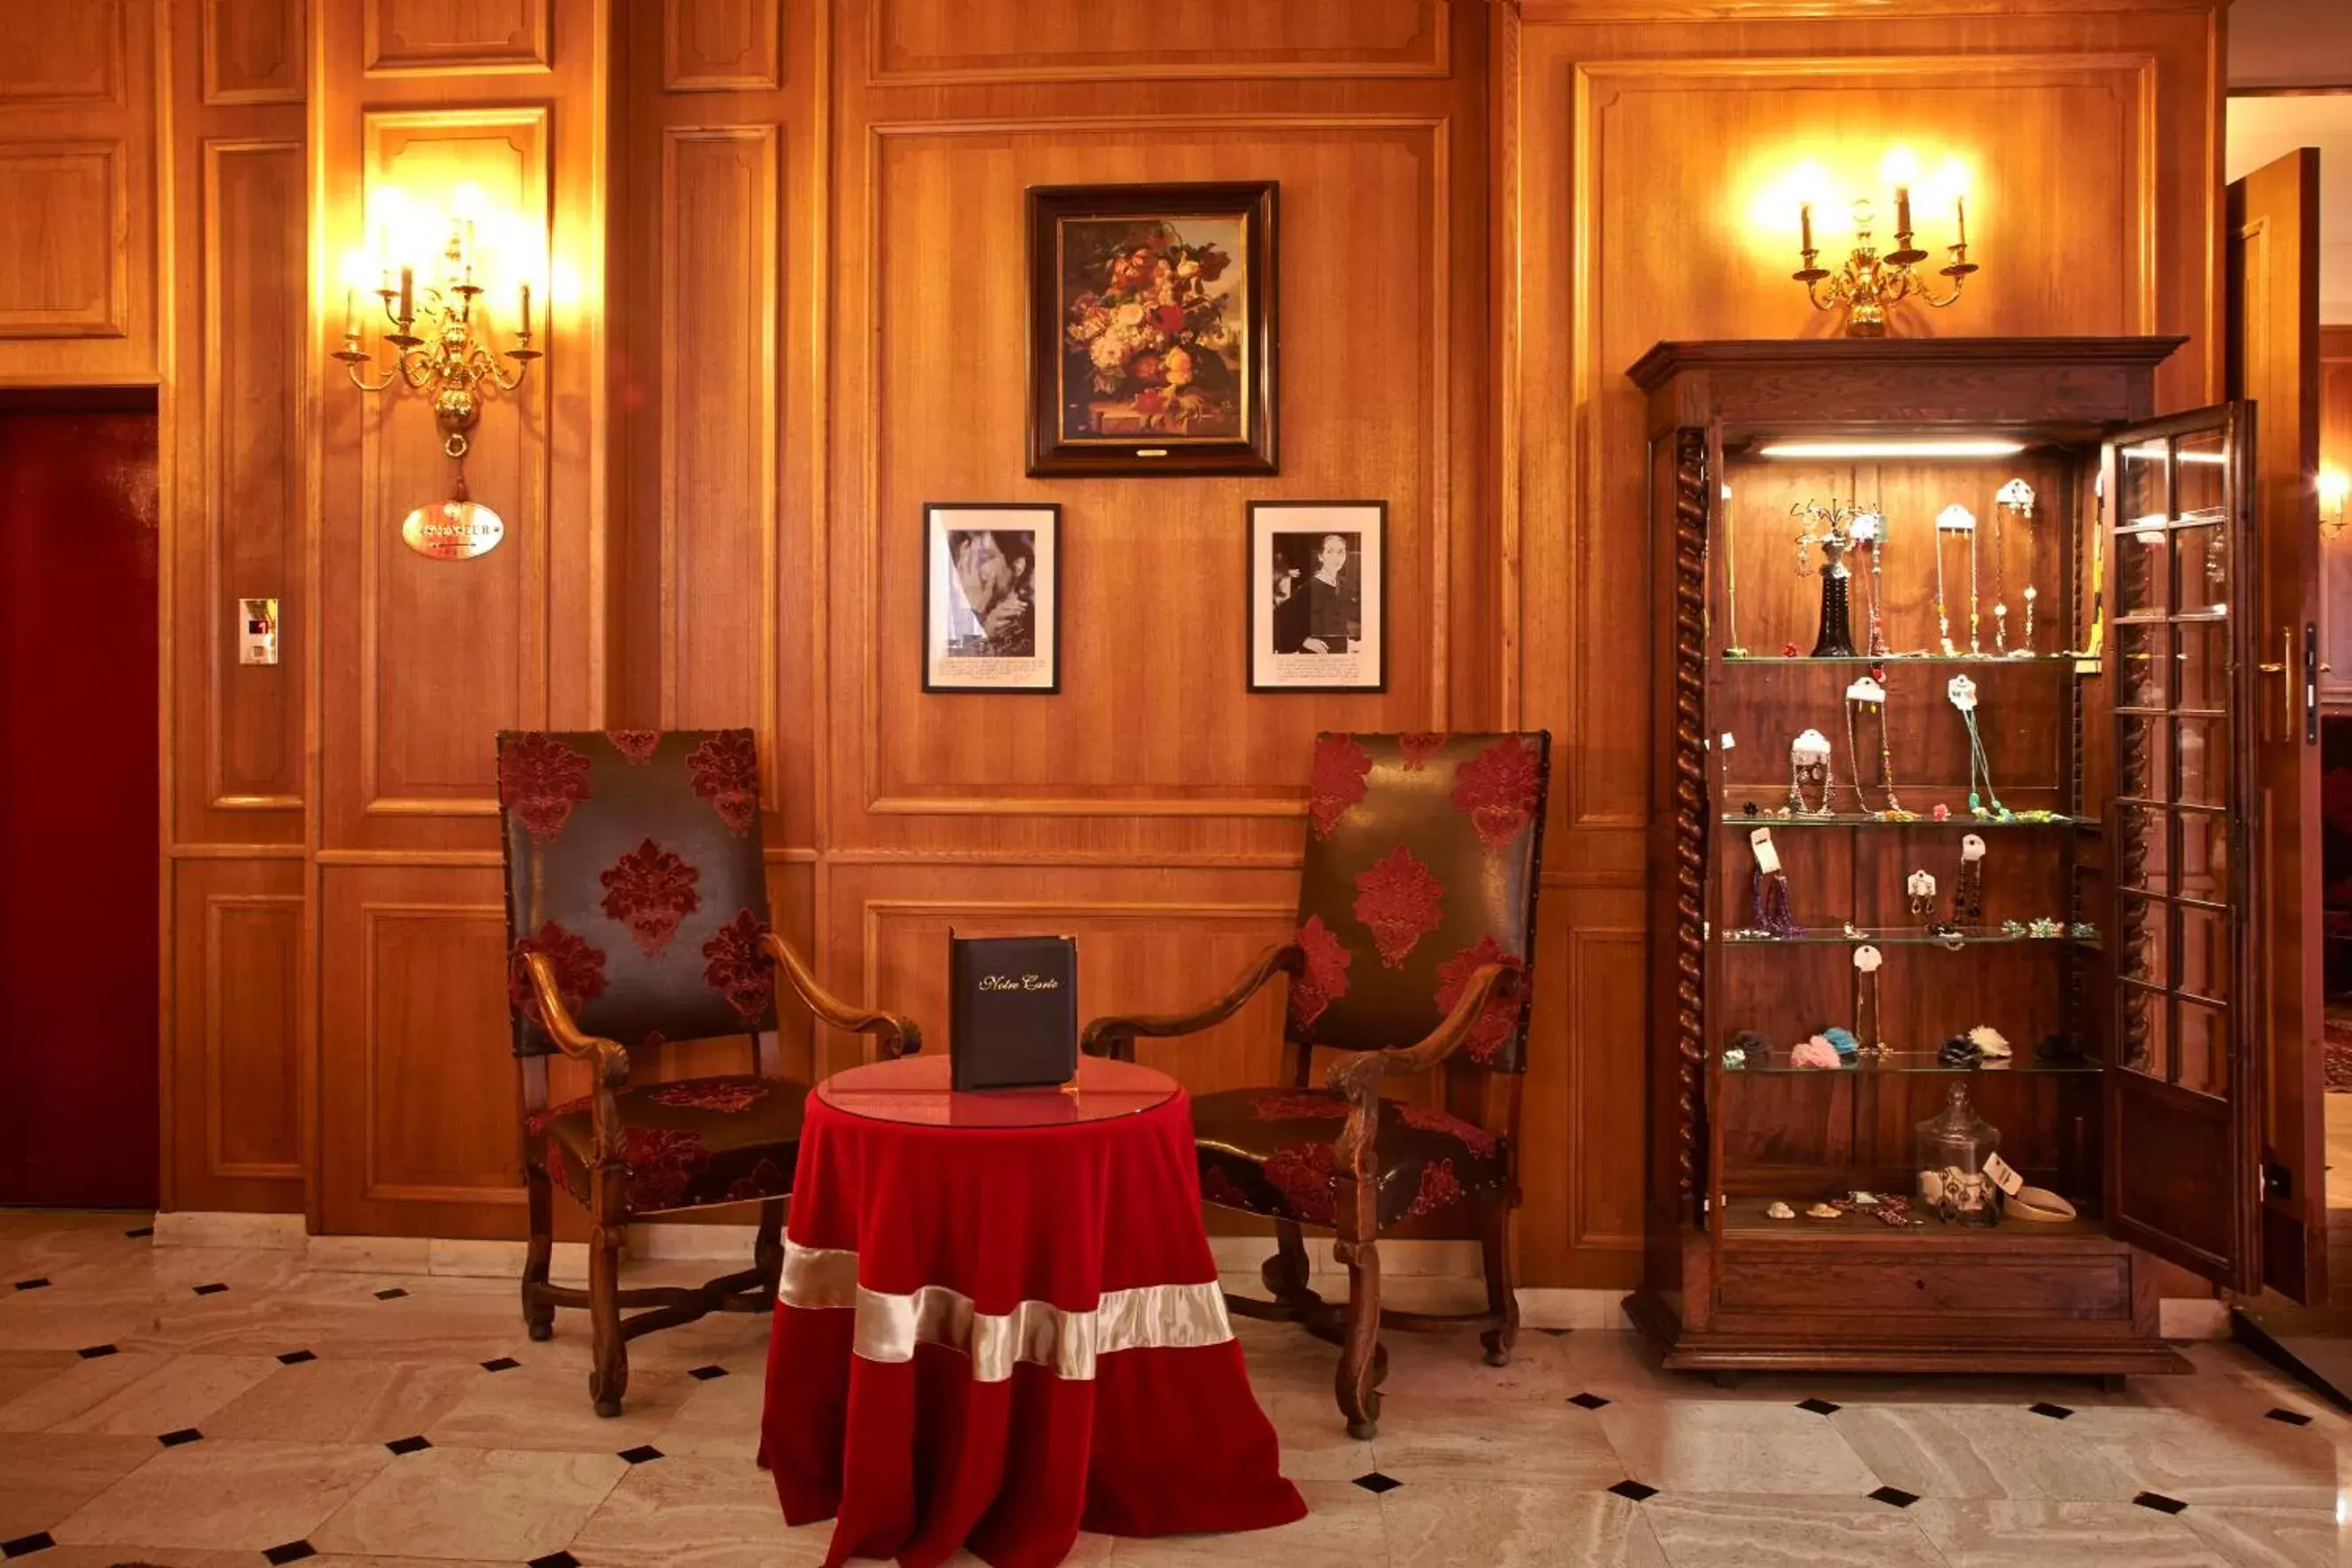 Lobby or reception in Grand Hôtel Dechampaigne